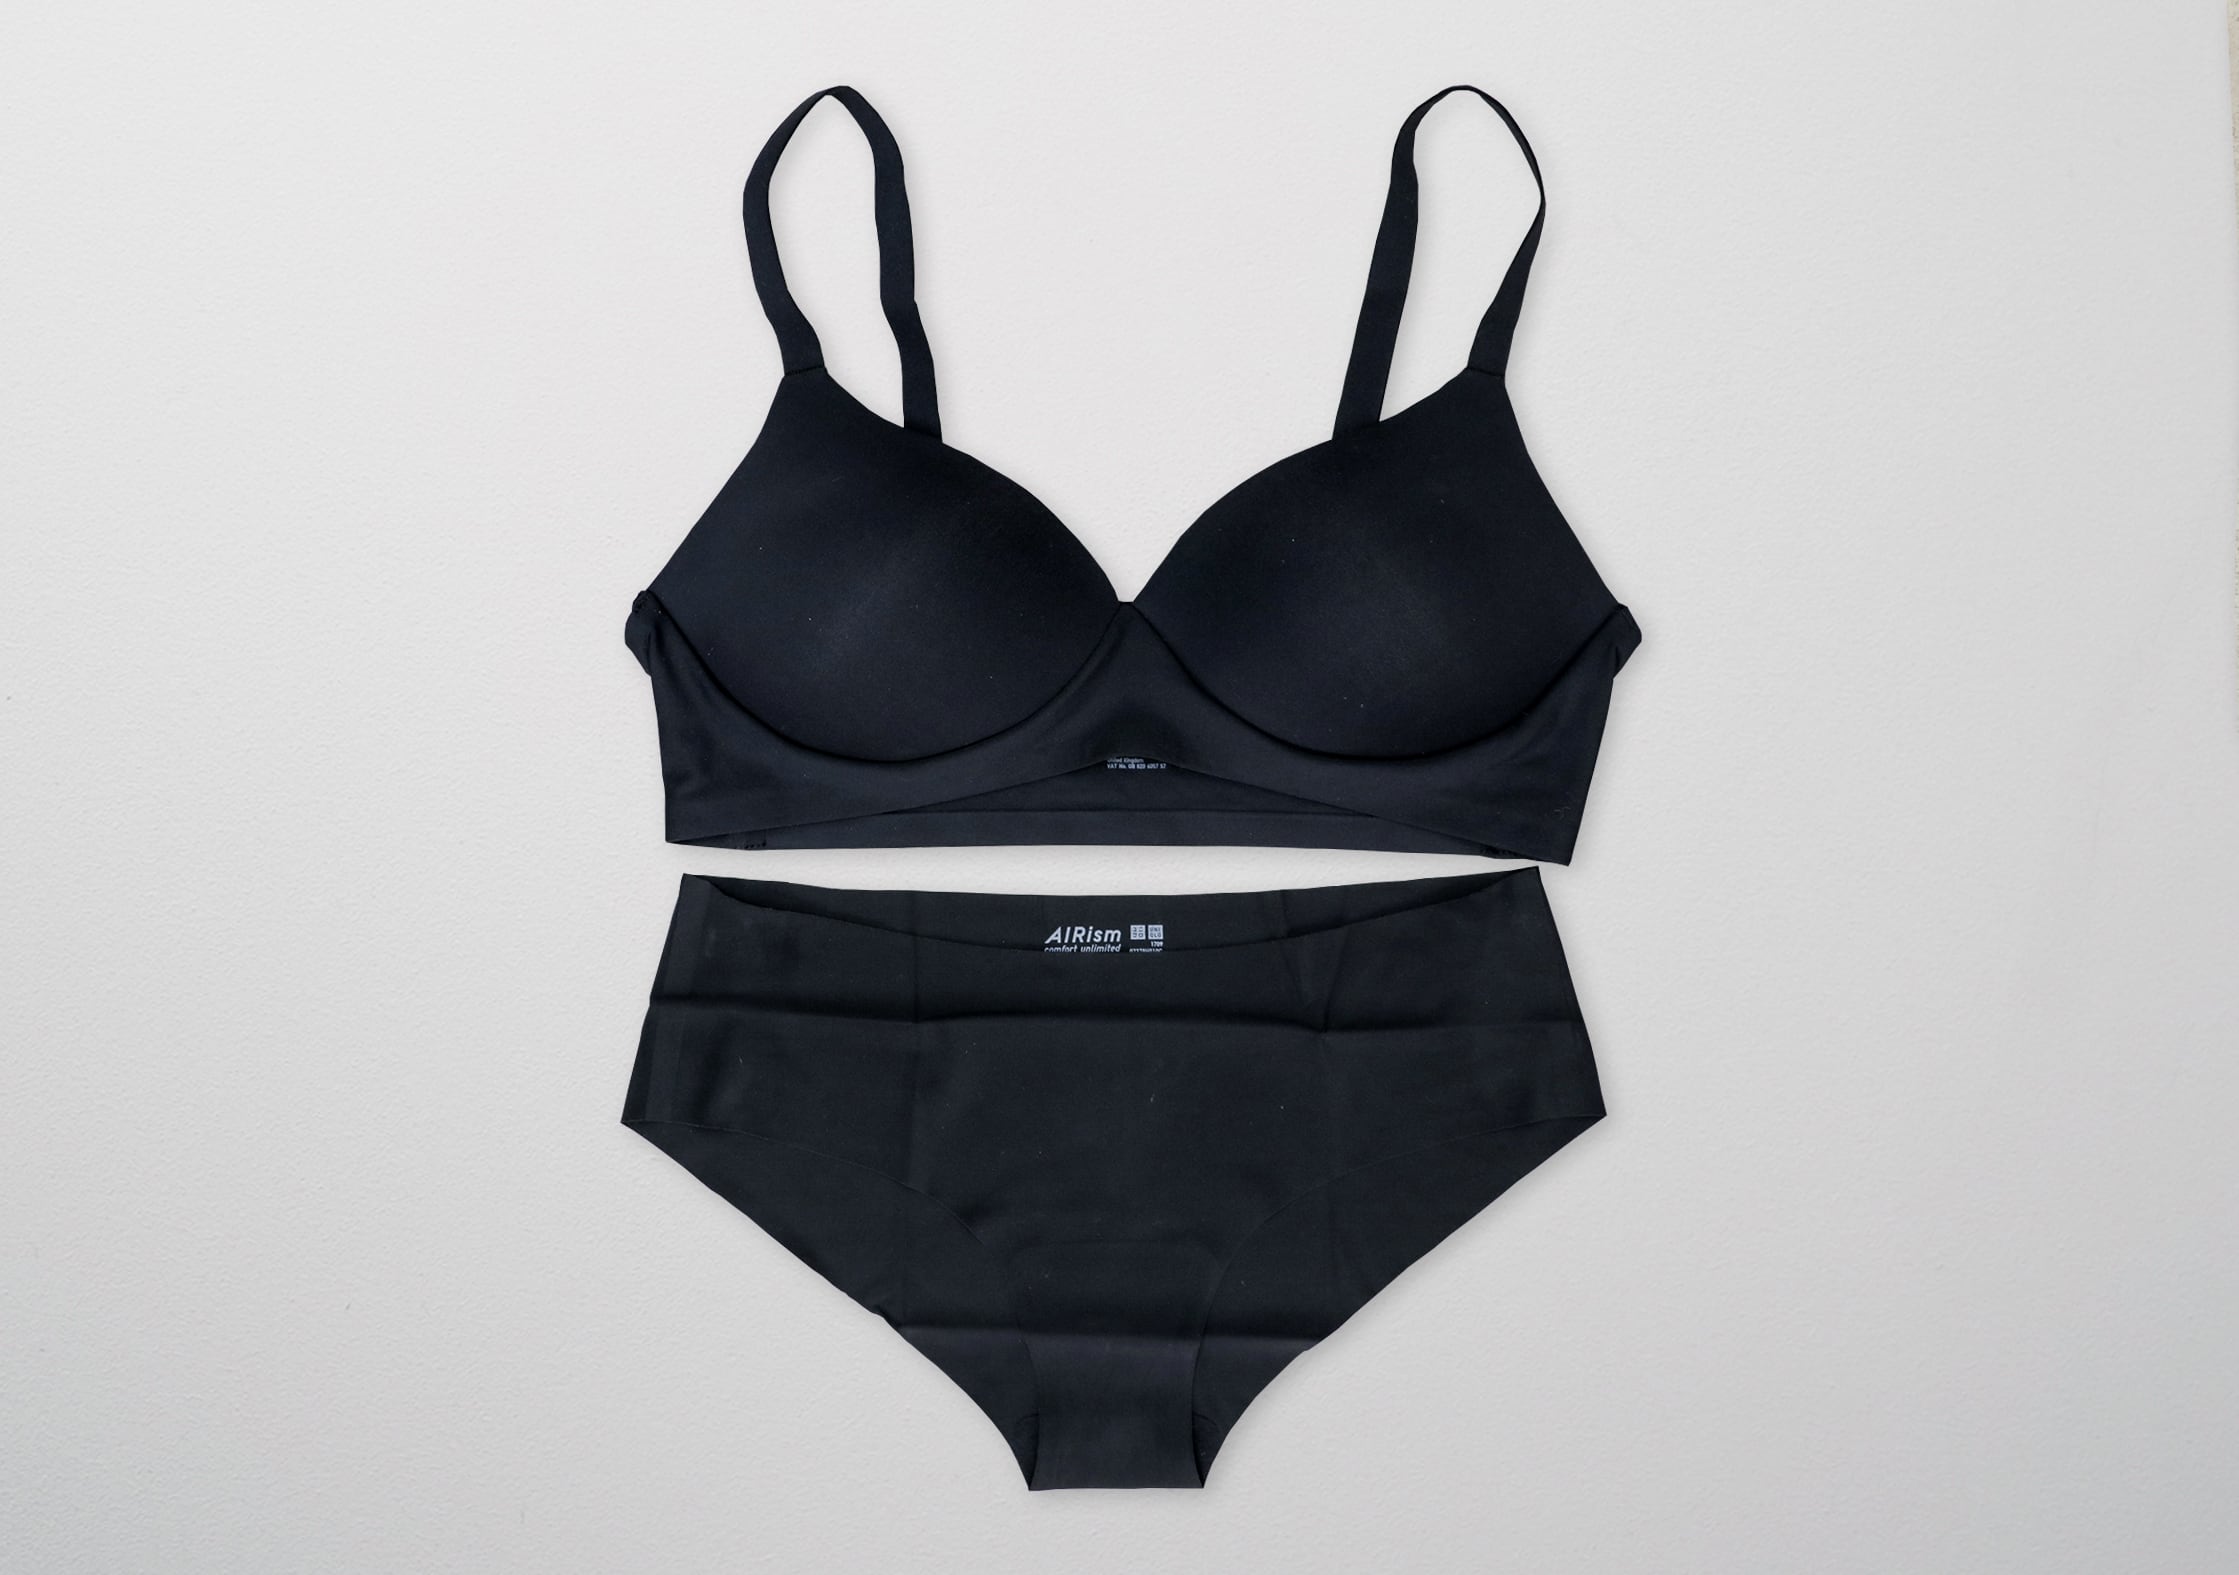 Uniqlo AIRism Ultra Seamless Bikini Shorts & Wireless 'Beauty Soft' Bra